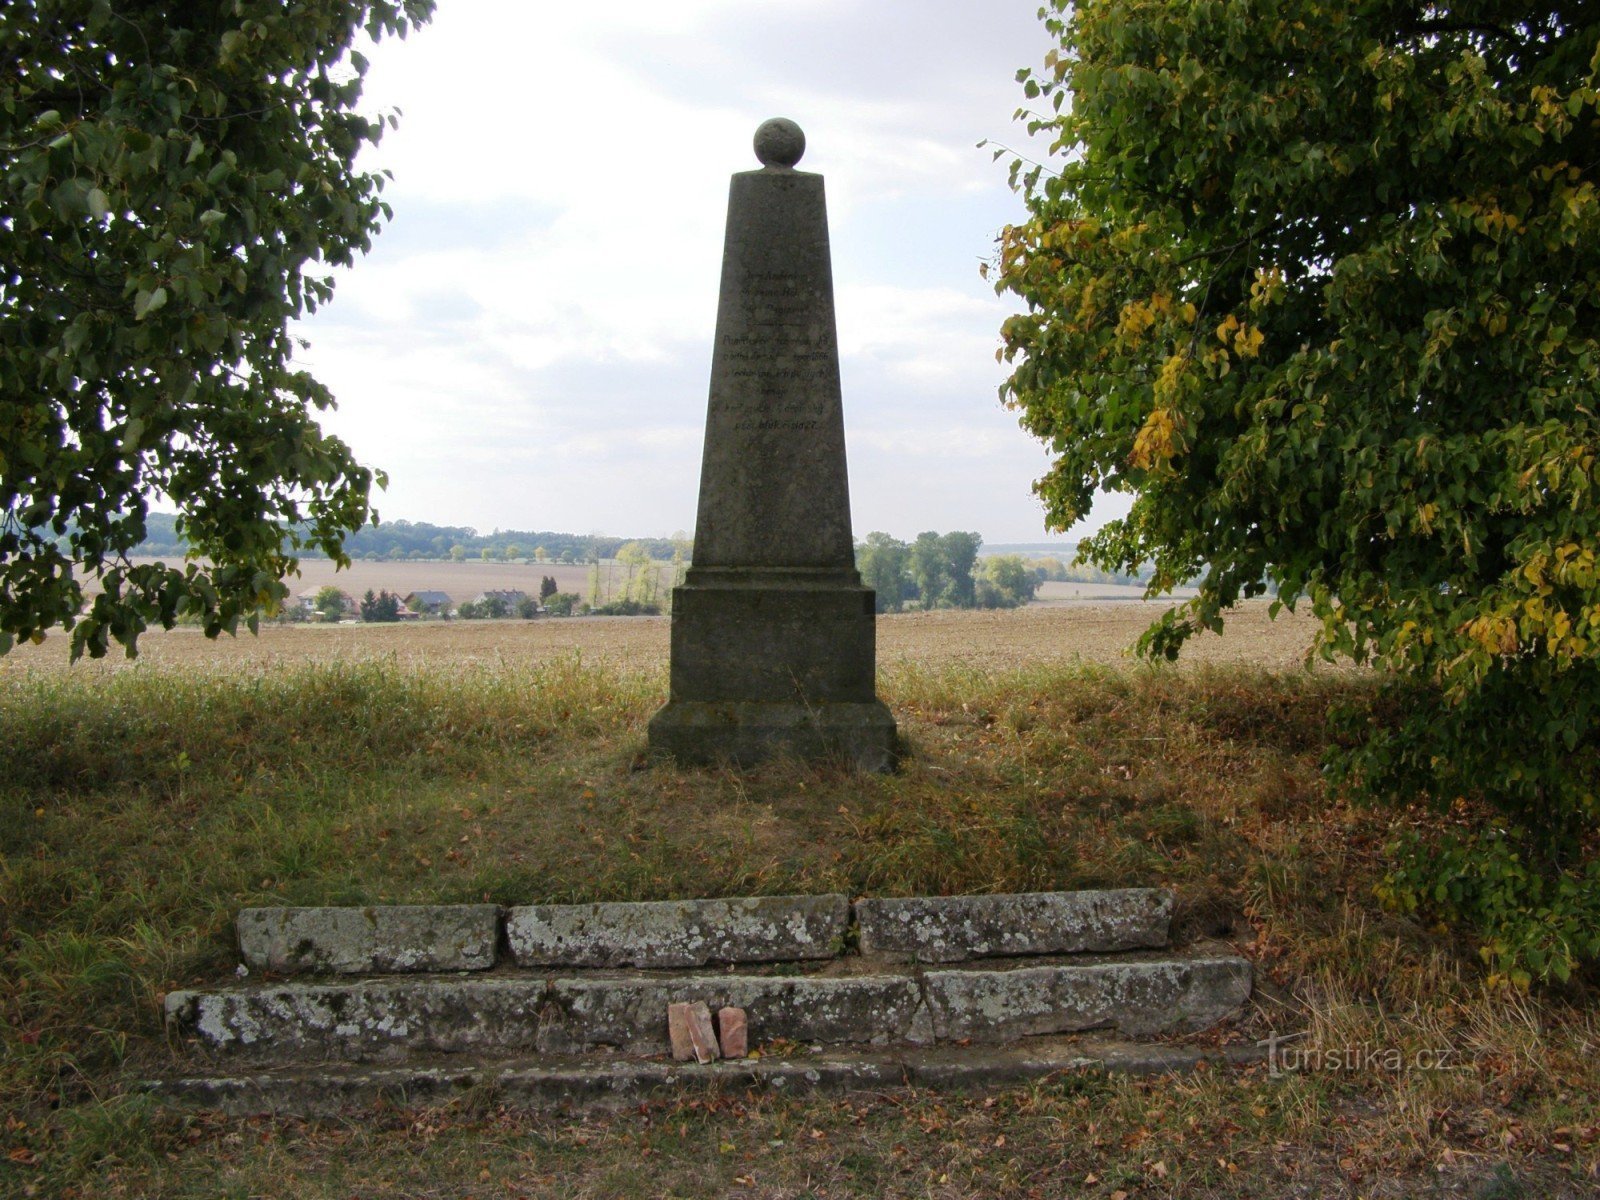 Čisteves - tượng đài Trung đoàn bộ binh Magdeburg số 2 của Phổ số 27